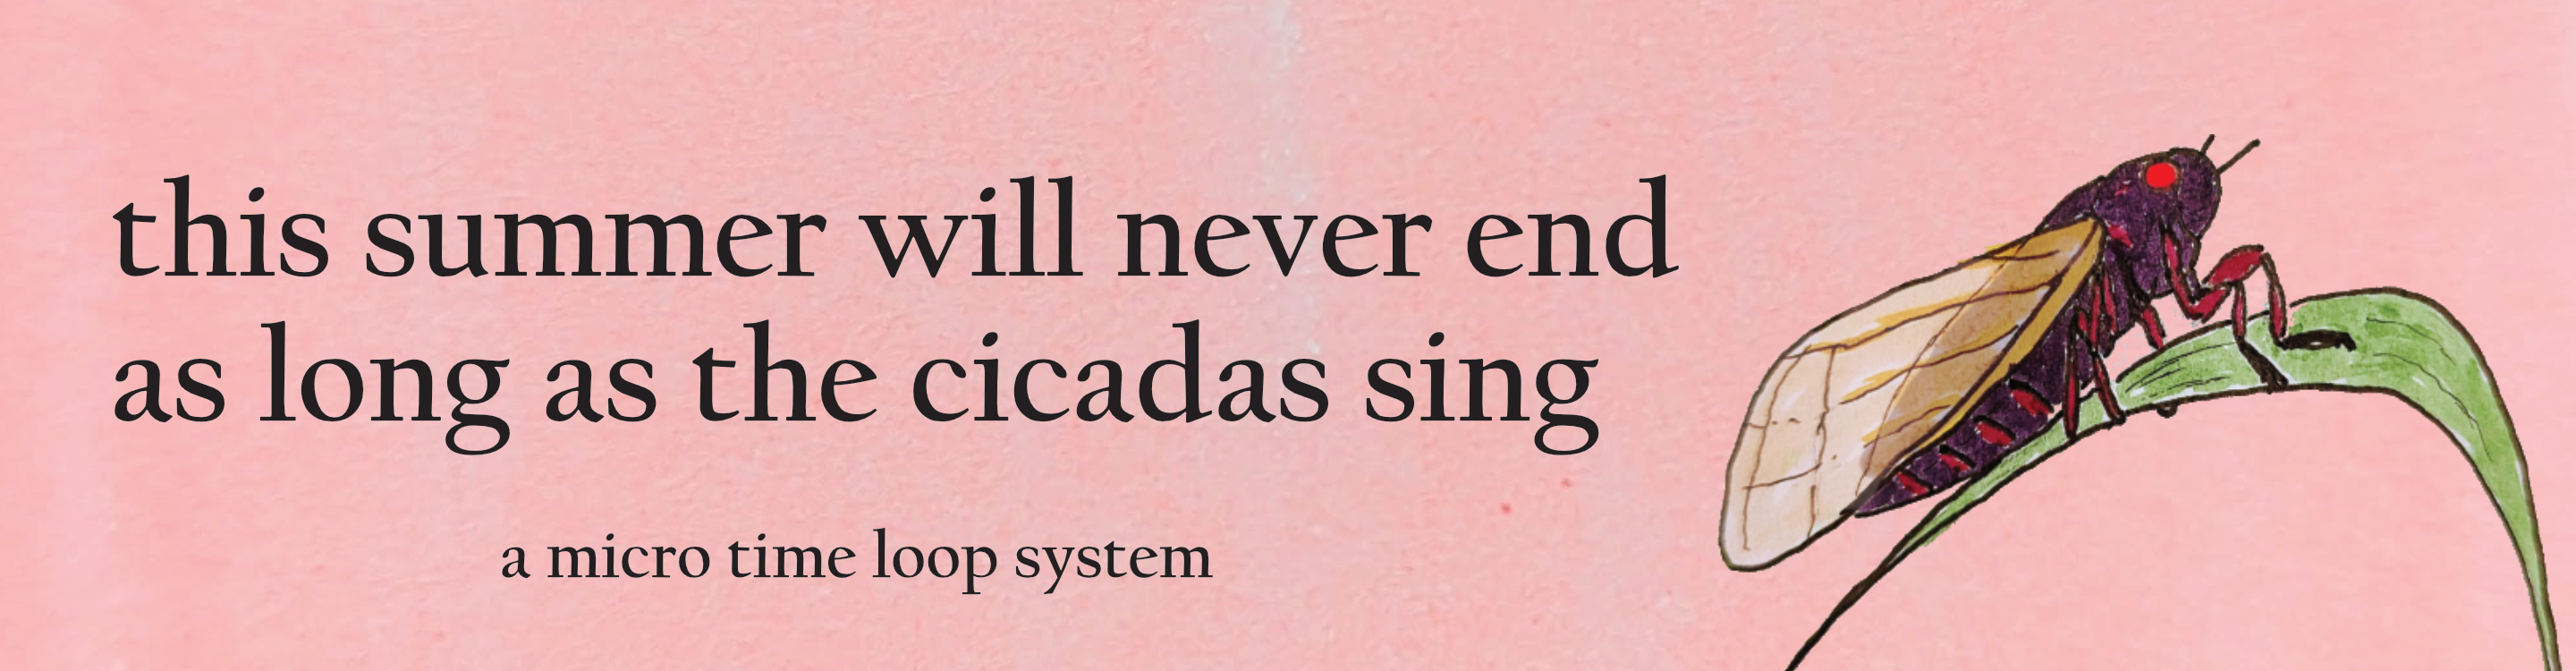 as long as the cicadas sing